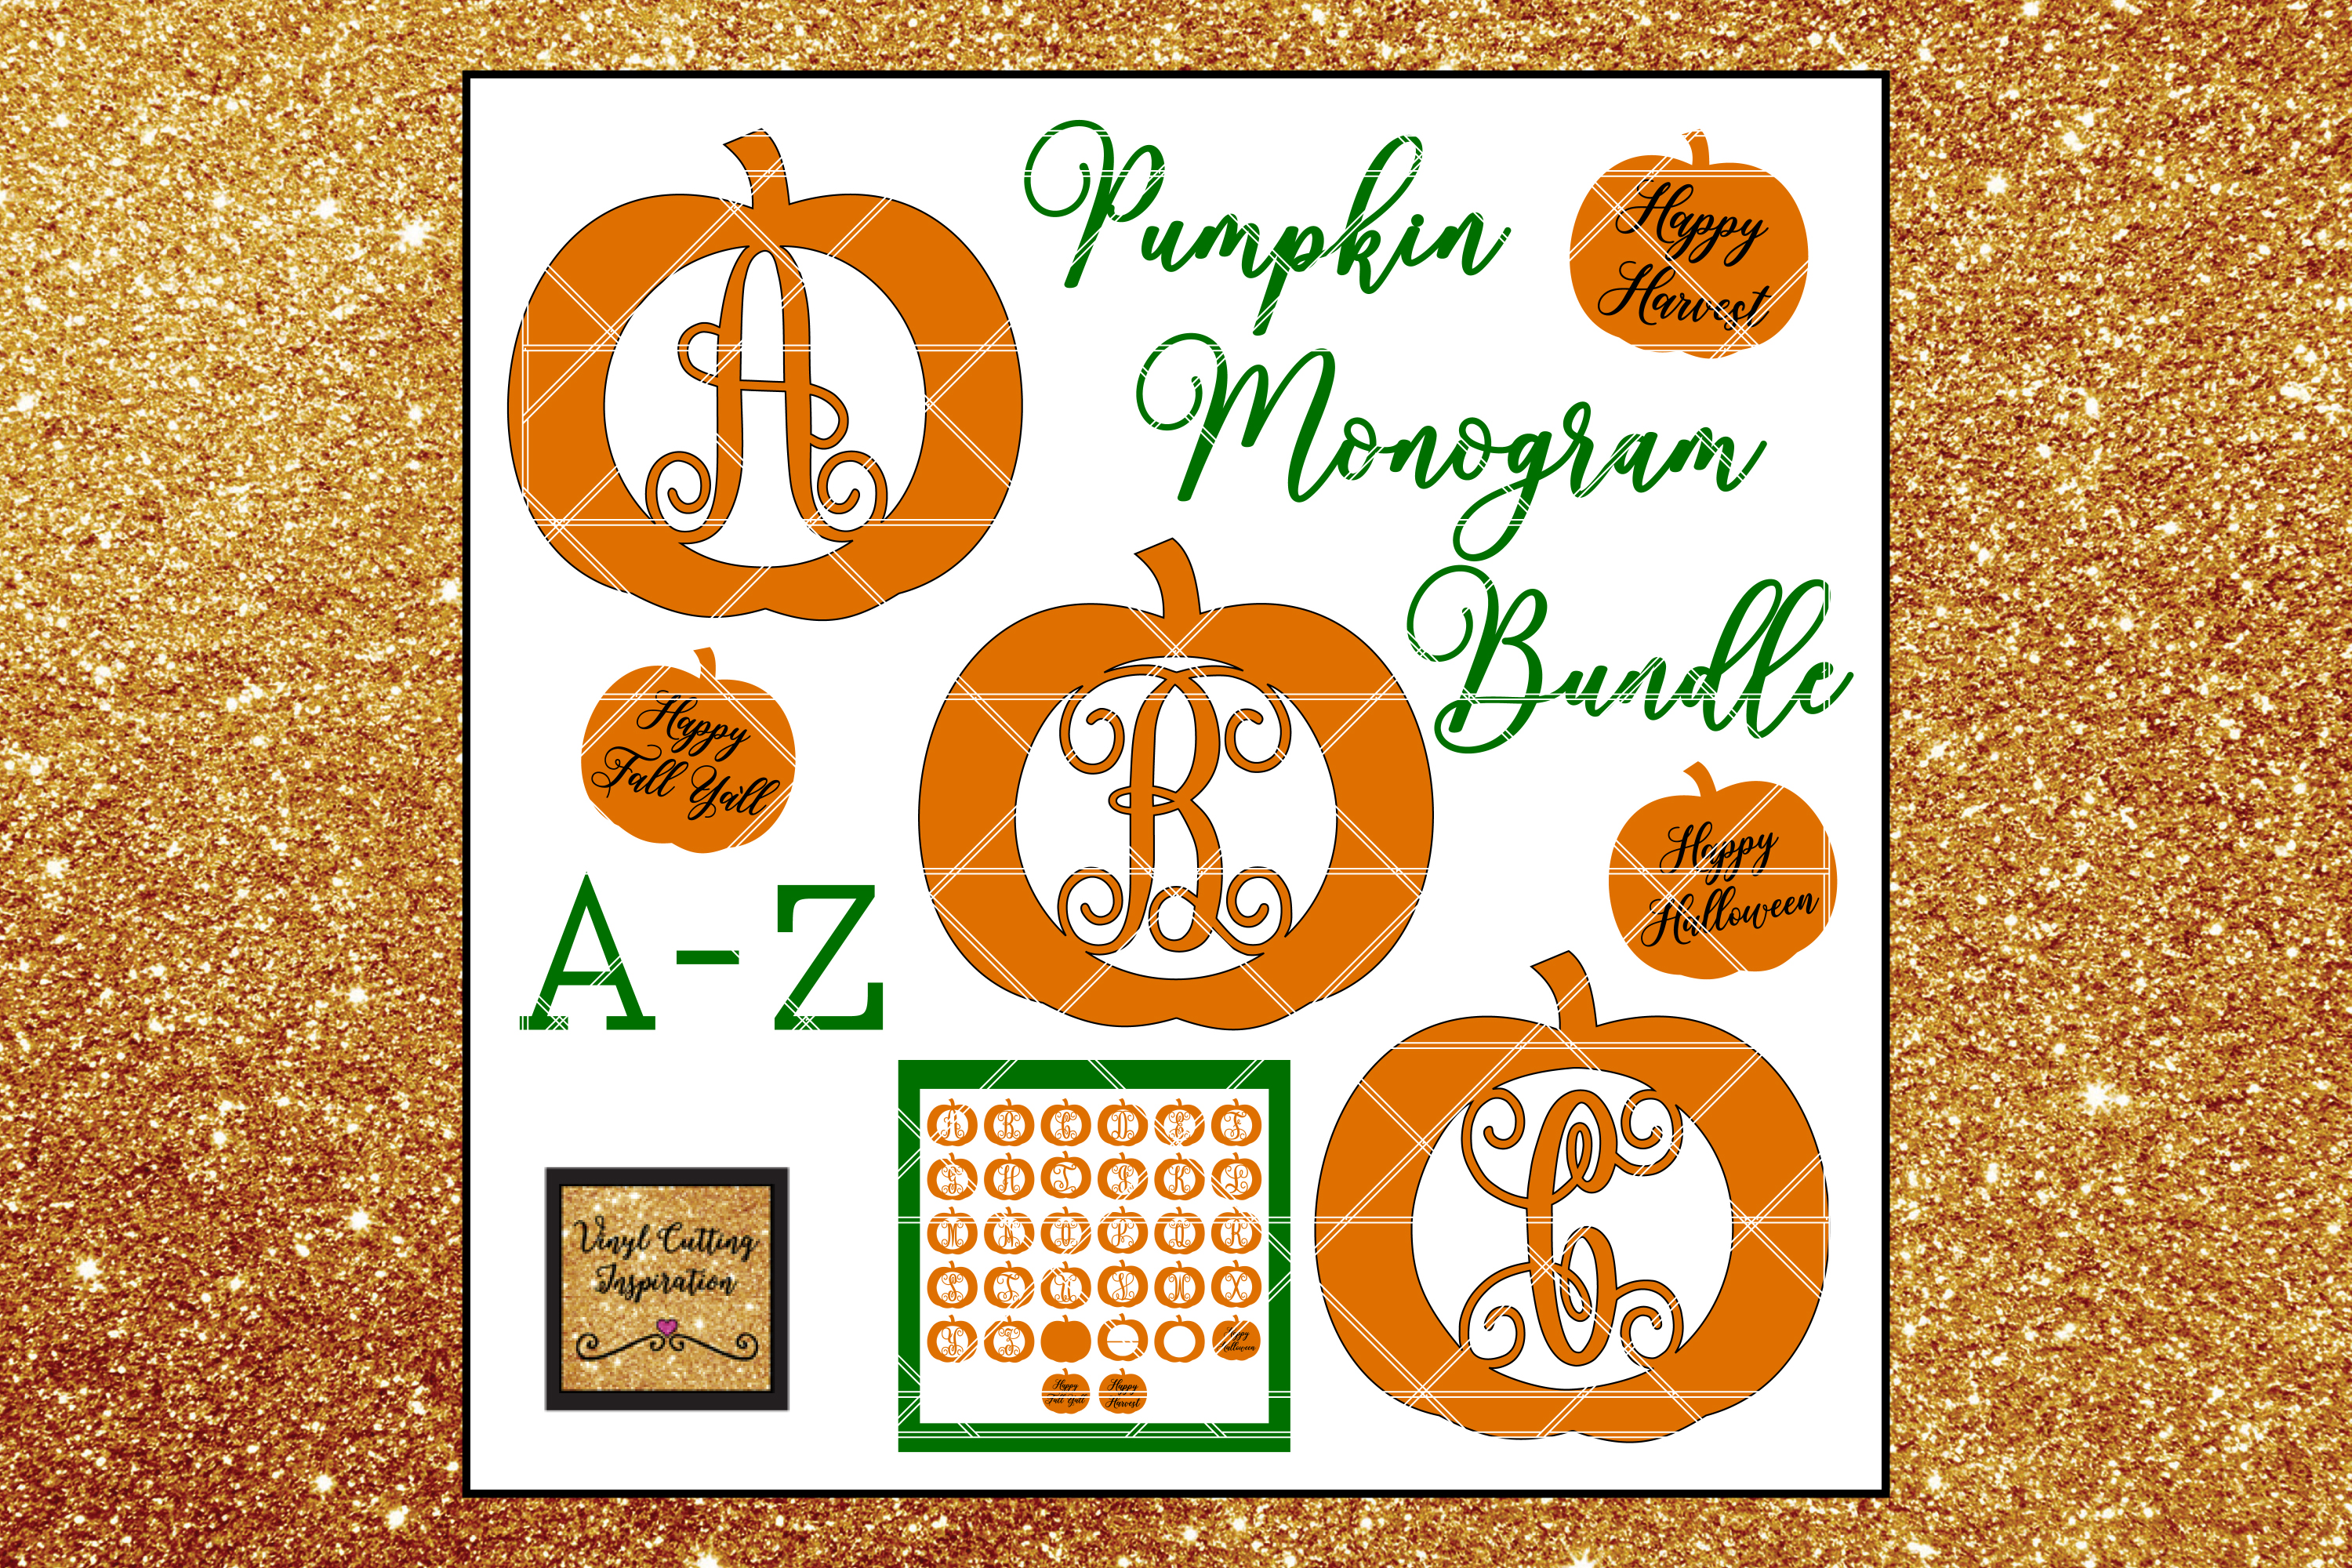 Pumpkin Svg, Pumpkin Monogram Svg, Pumpkin Monogram Designs (123286